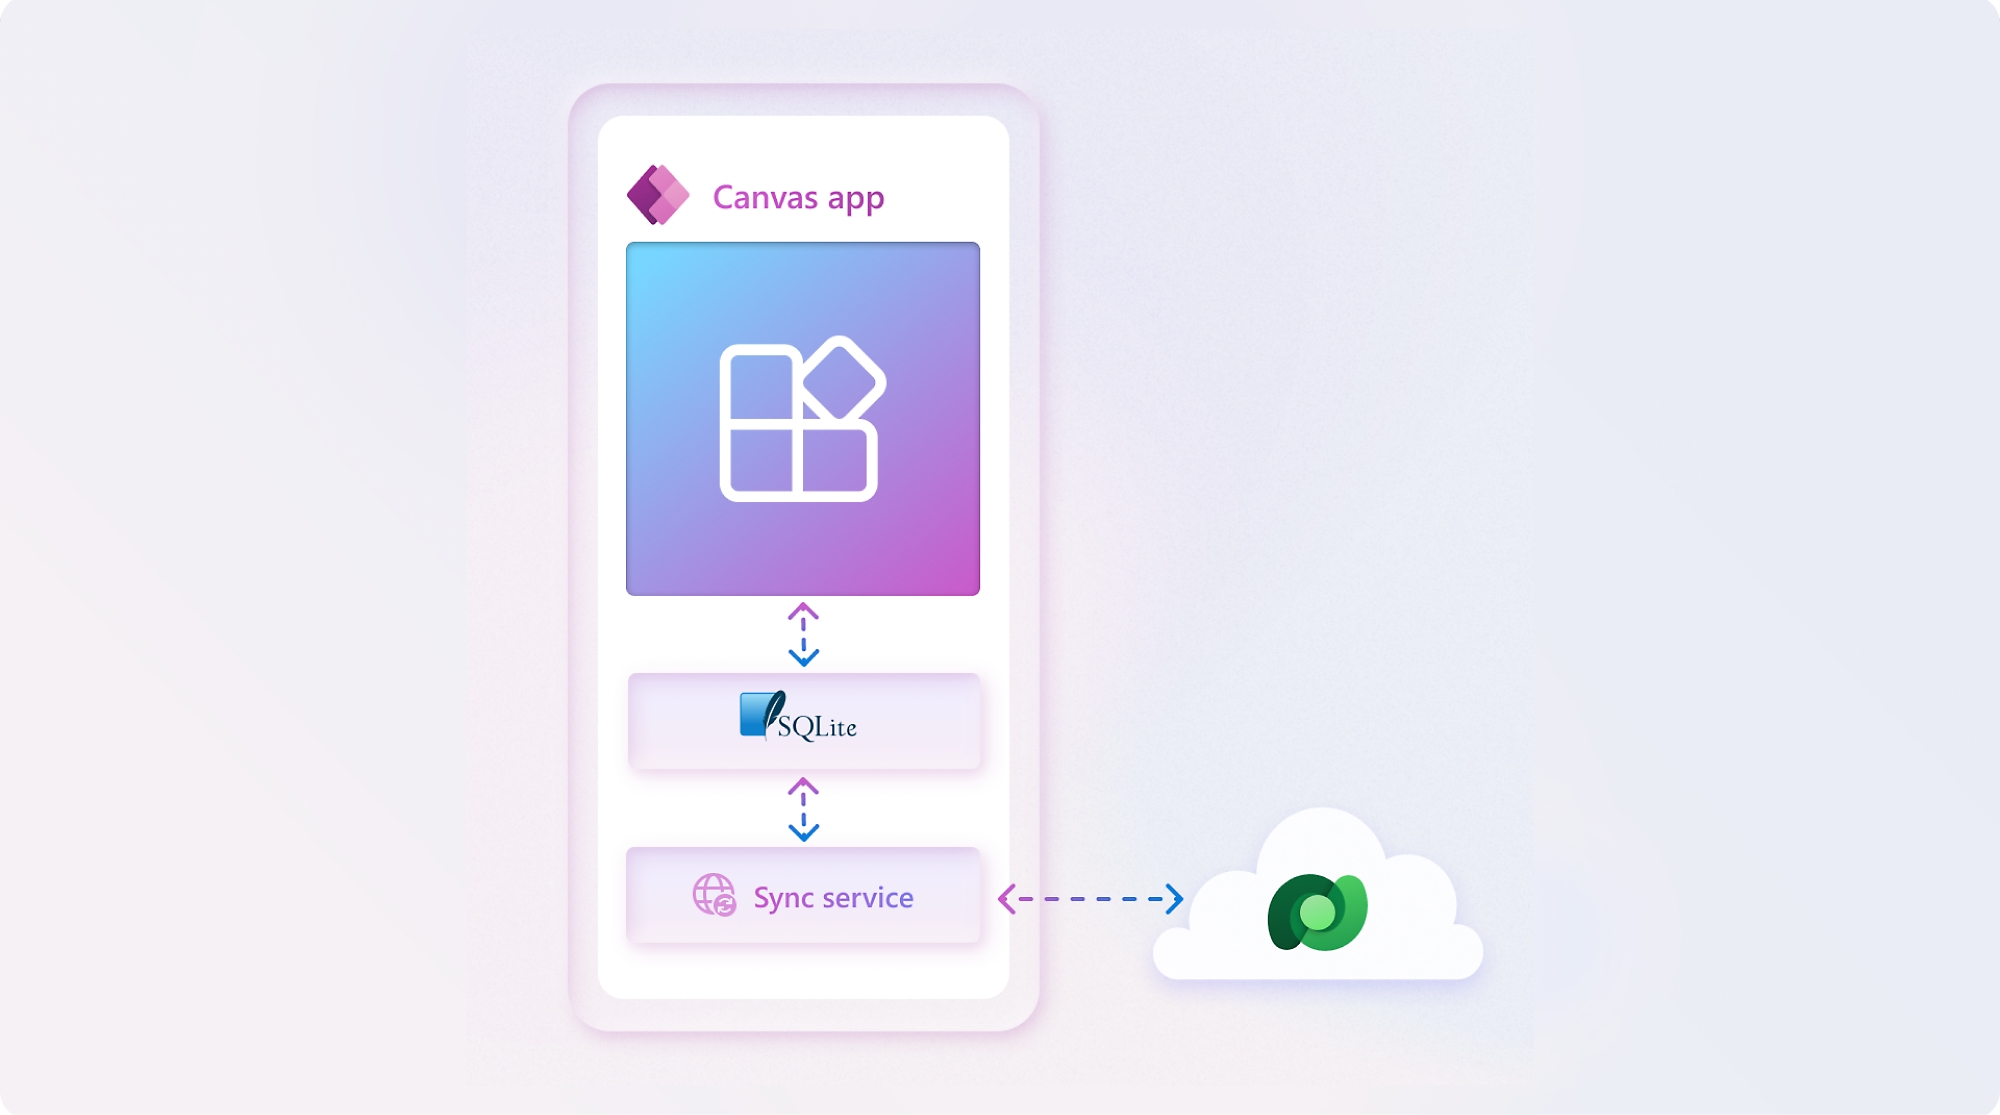 Abbildung einer mobilen Benutzeroberfläche mit der auf dem Bildschirm angezeigten „Canvas-App“ zusammen mit Symbolen für sqlite